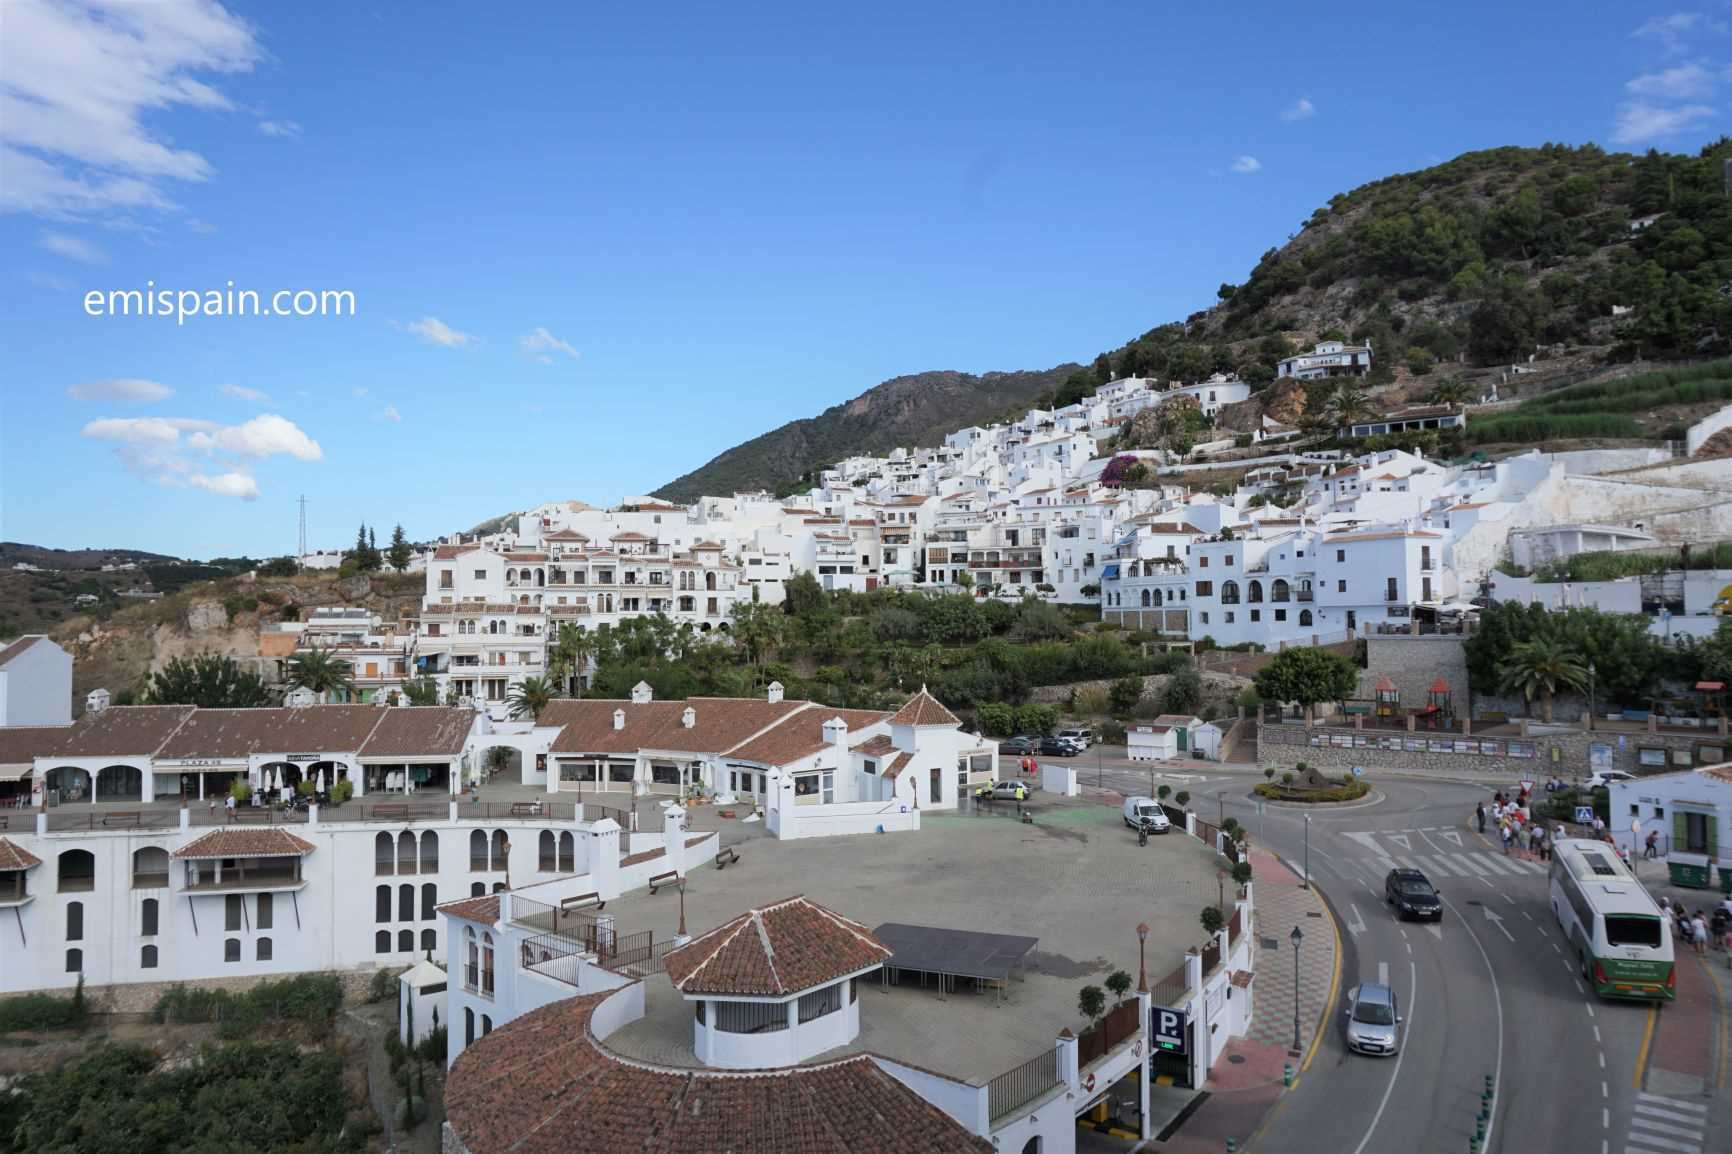 絶景 スペインで最も美しい白い村を見渡せる フリヒリアナのホテル Andalucia アンダルシア街歩き From スペイン